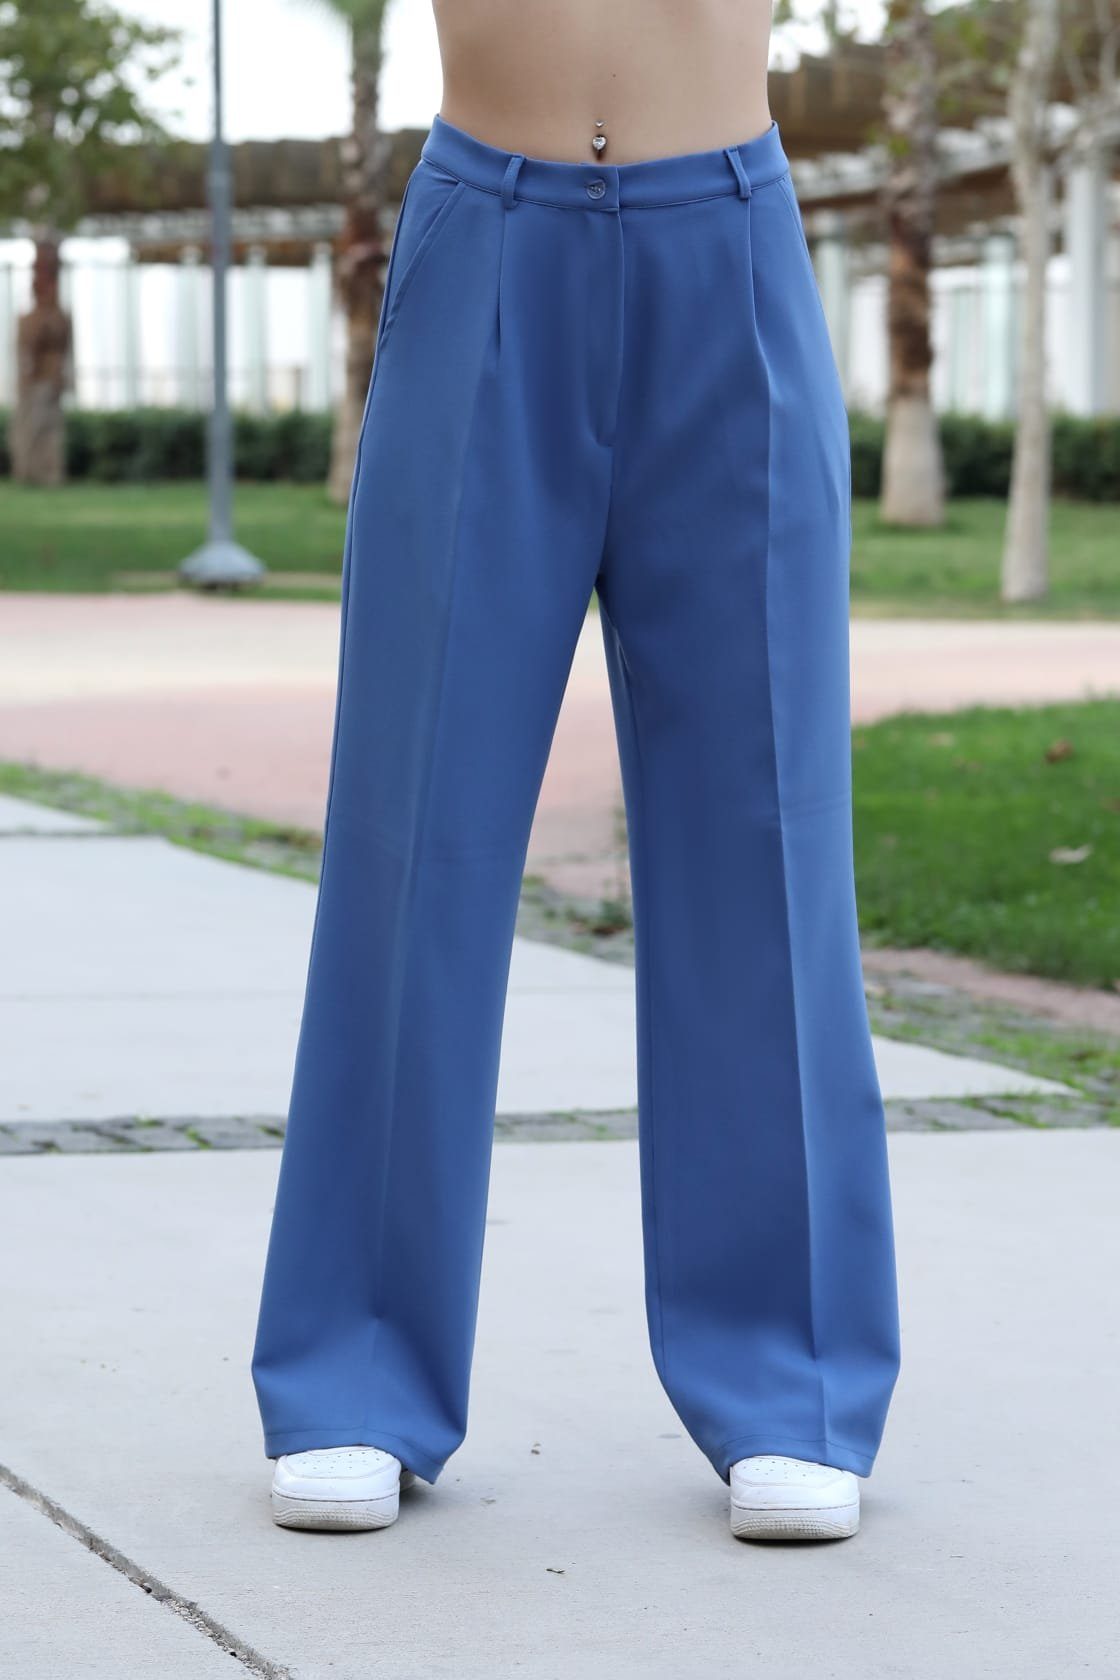 Modavitrini Palazzohose Weite Damen Hose Lässig Locker lange Hose elegant sportlich Hohe Taille, 10 Farben Indigo-Blau